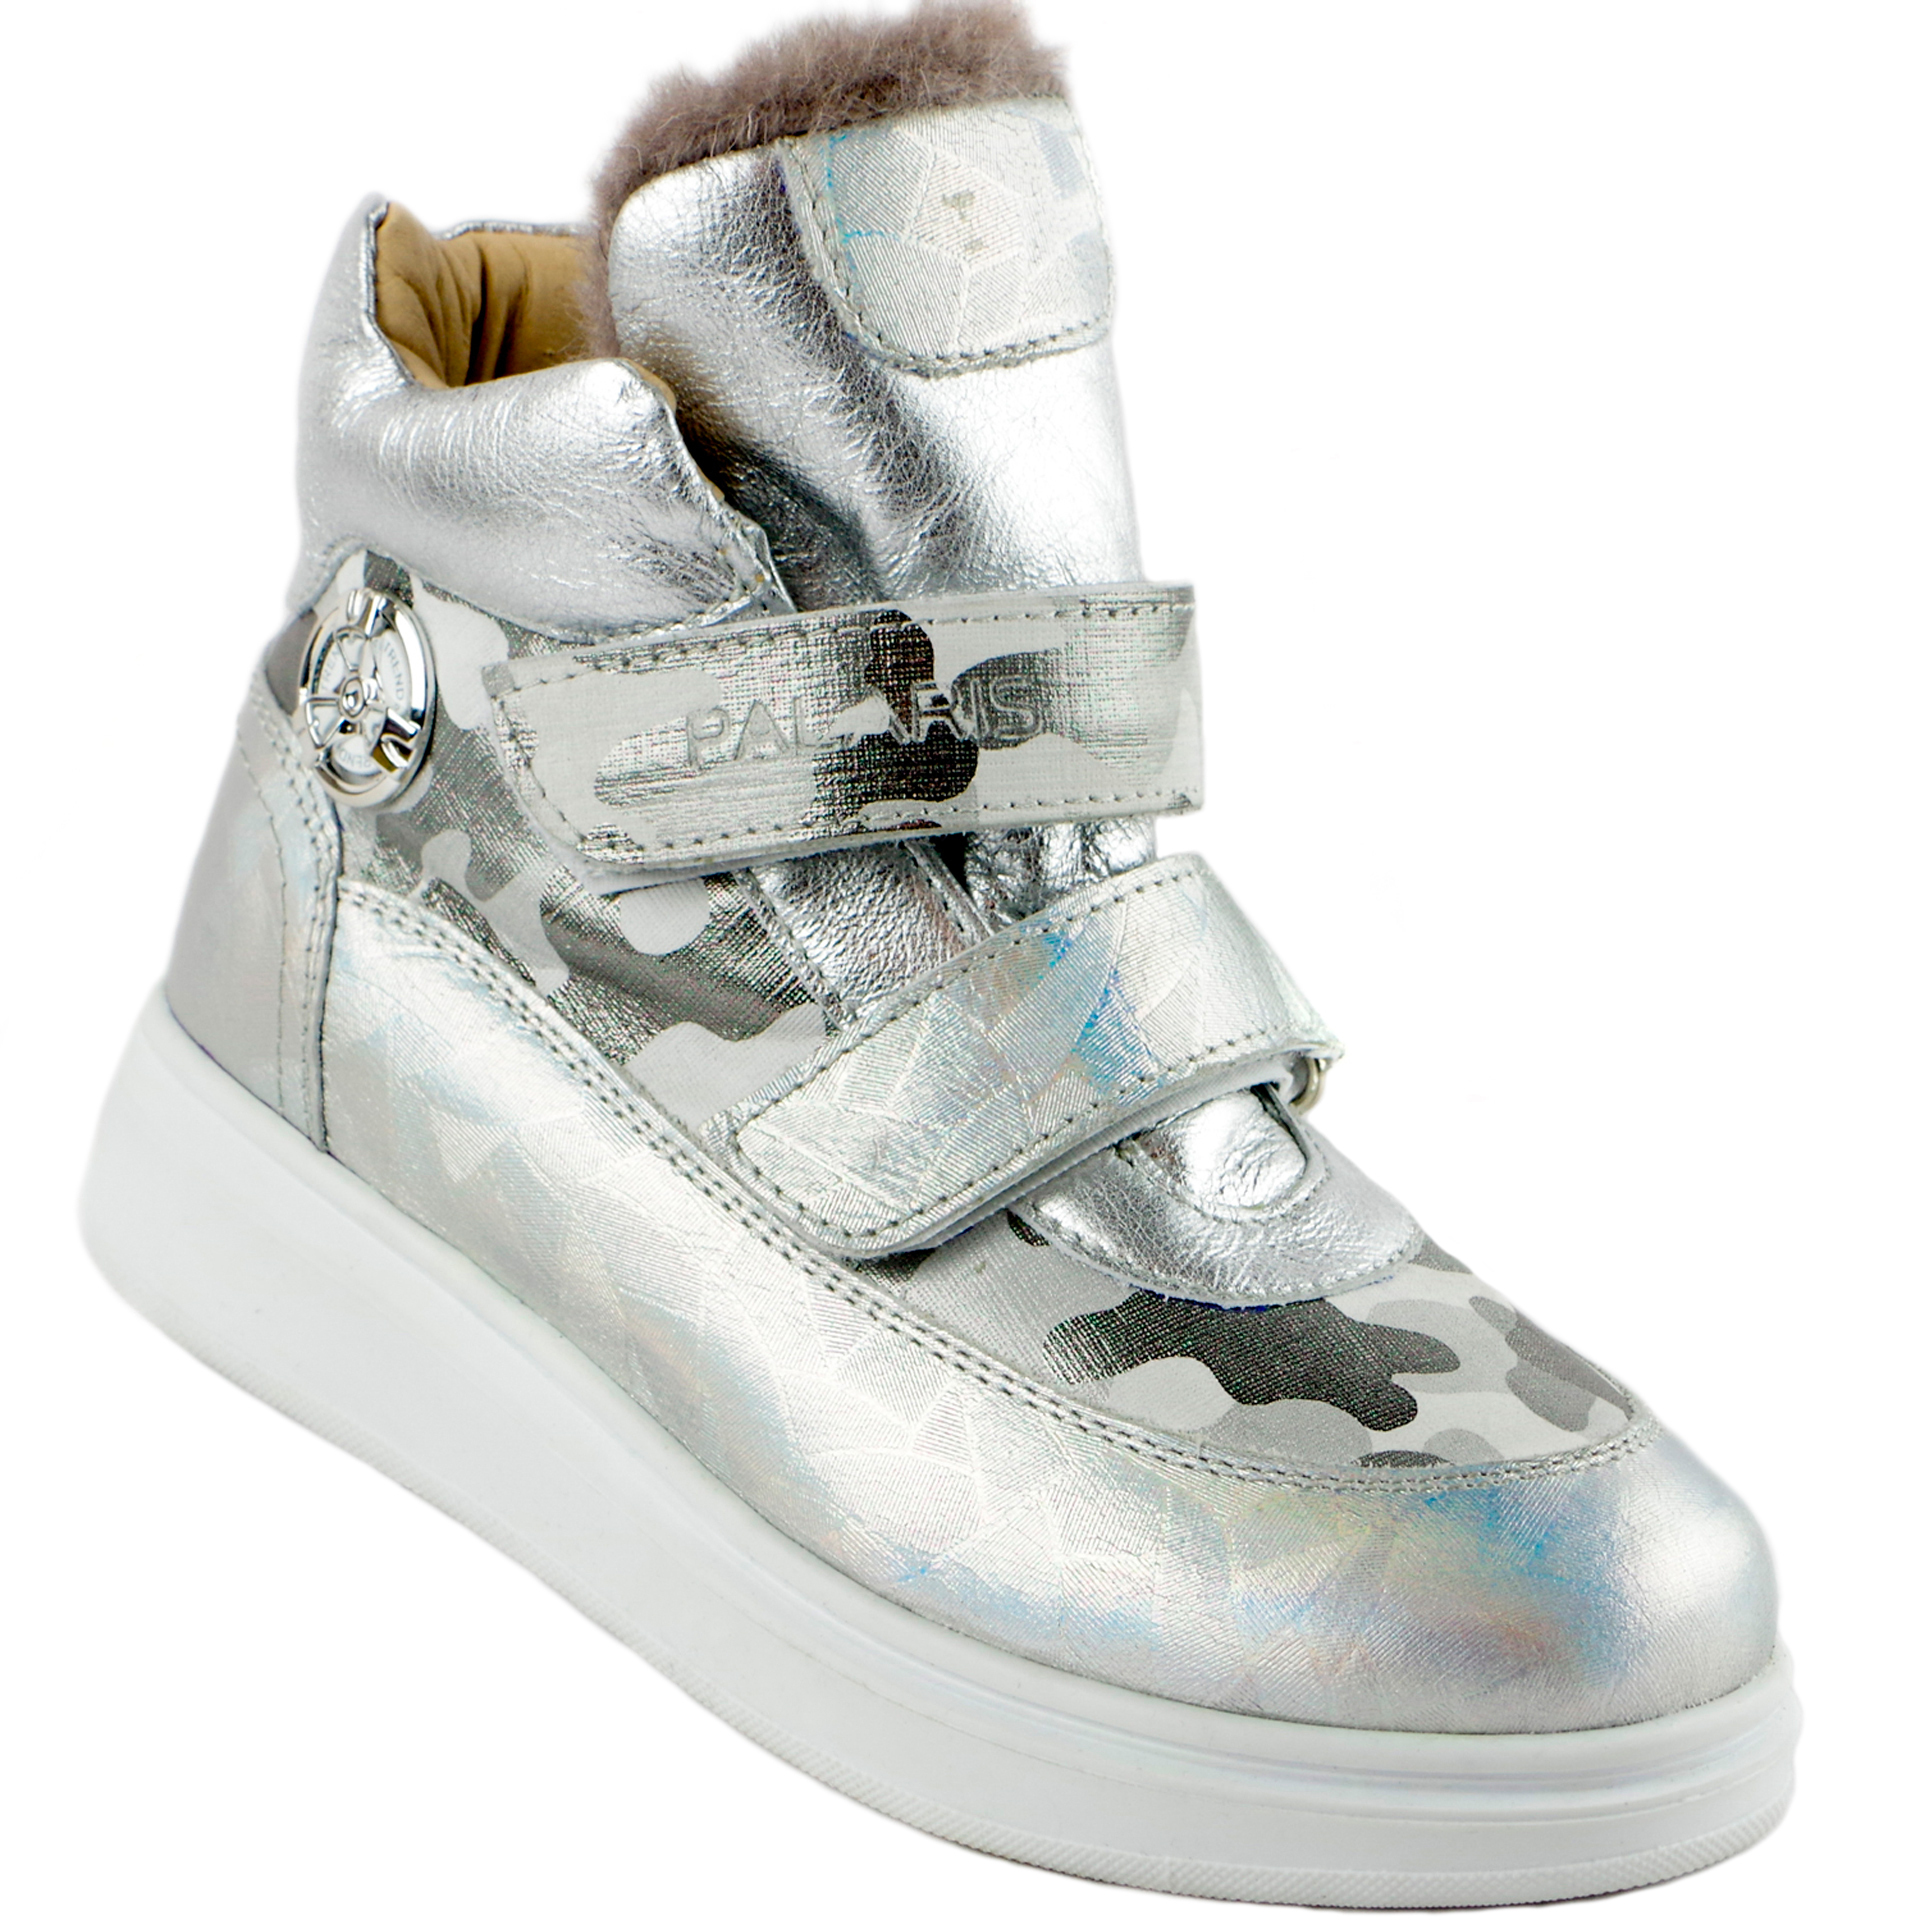 Зимние ботинки (1886) материал Натуральная кожа, цвет Серебрянный  для девочки 31-40 размеры – Sole Kids, Днепр